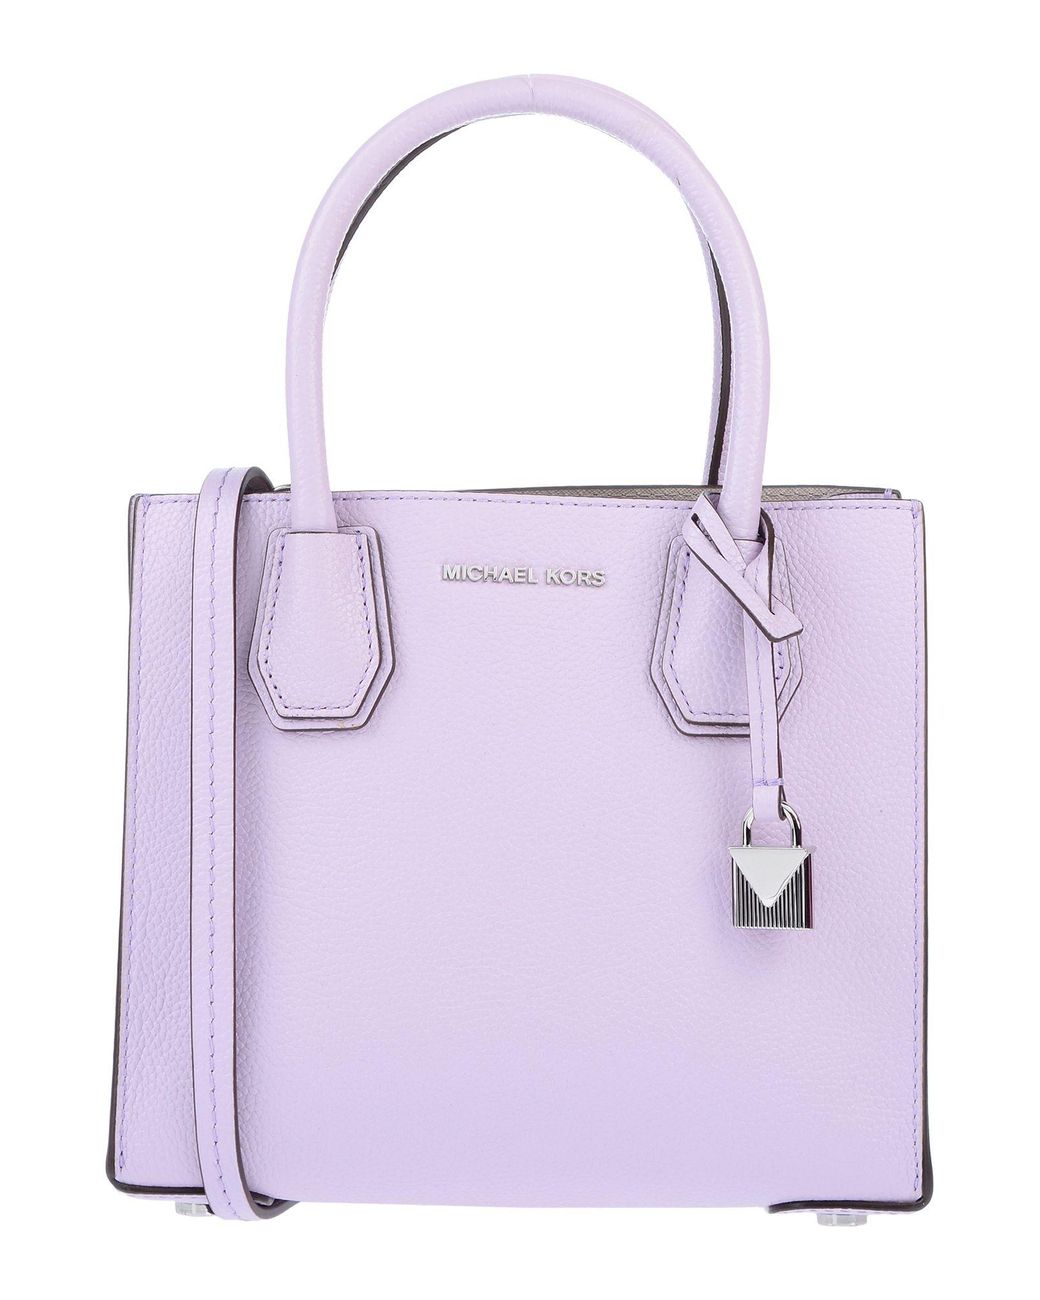 Total 73+ imagen lavender michael kors purse